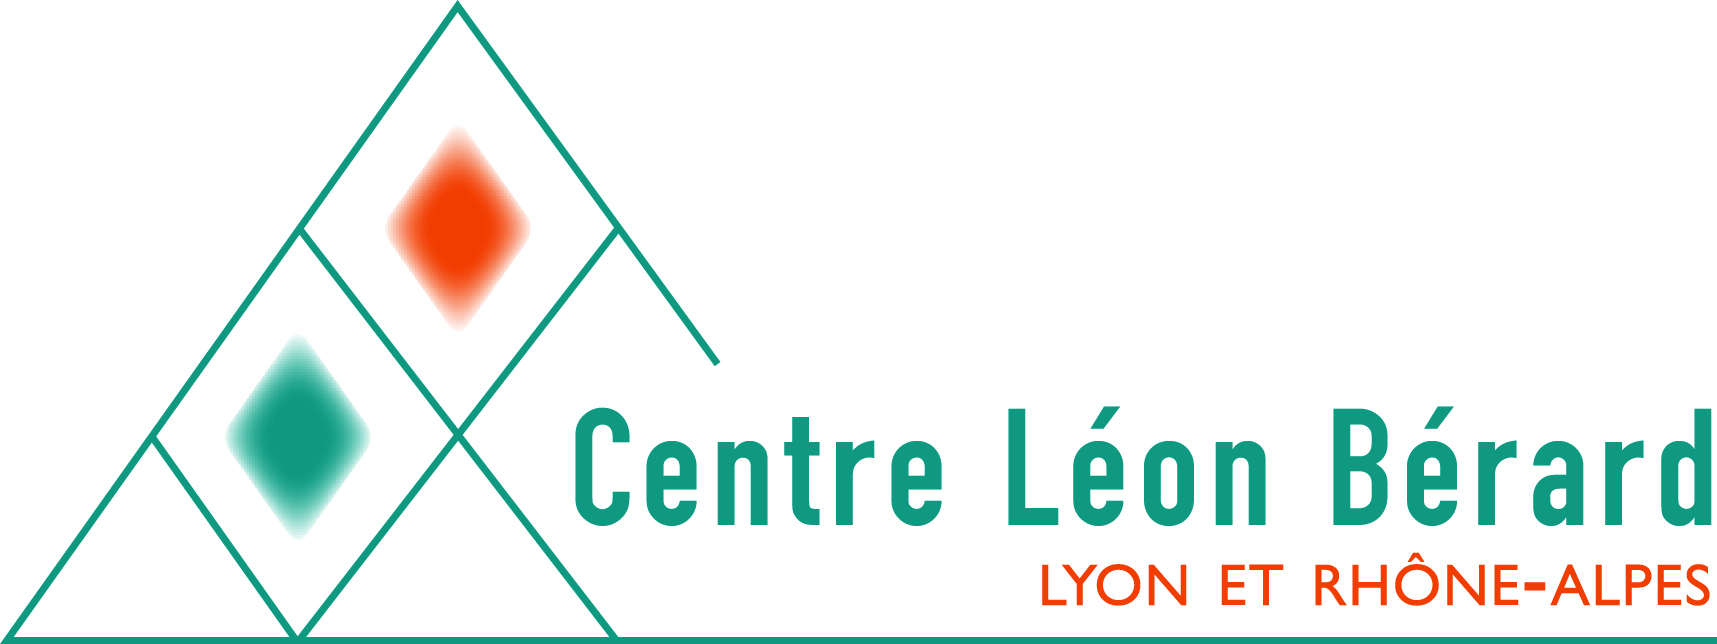 Logo leonBerard